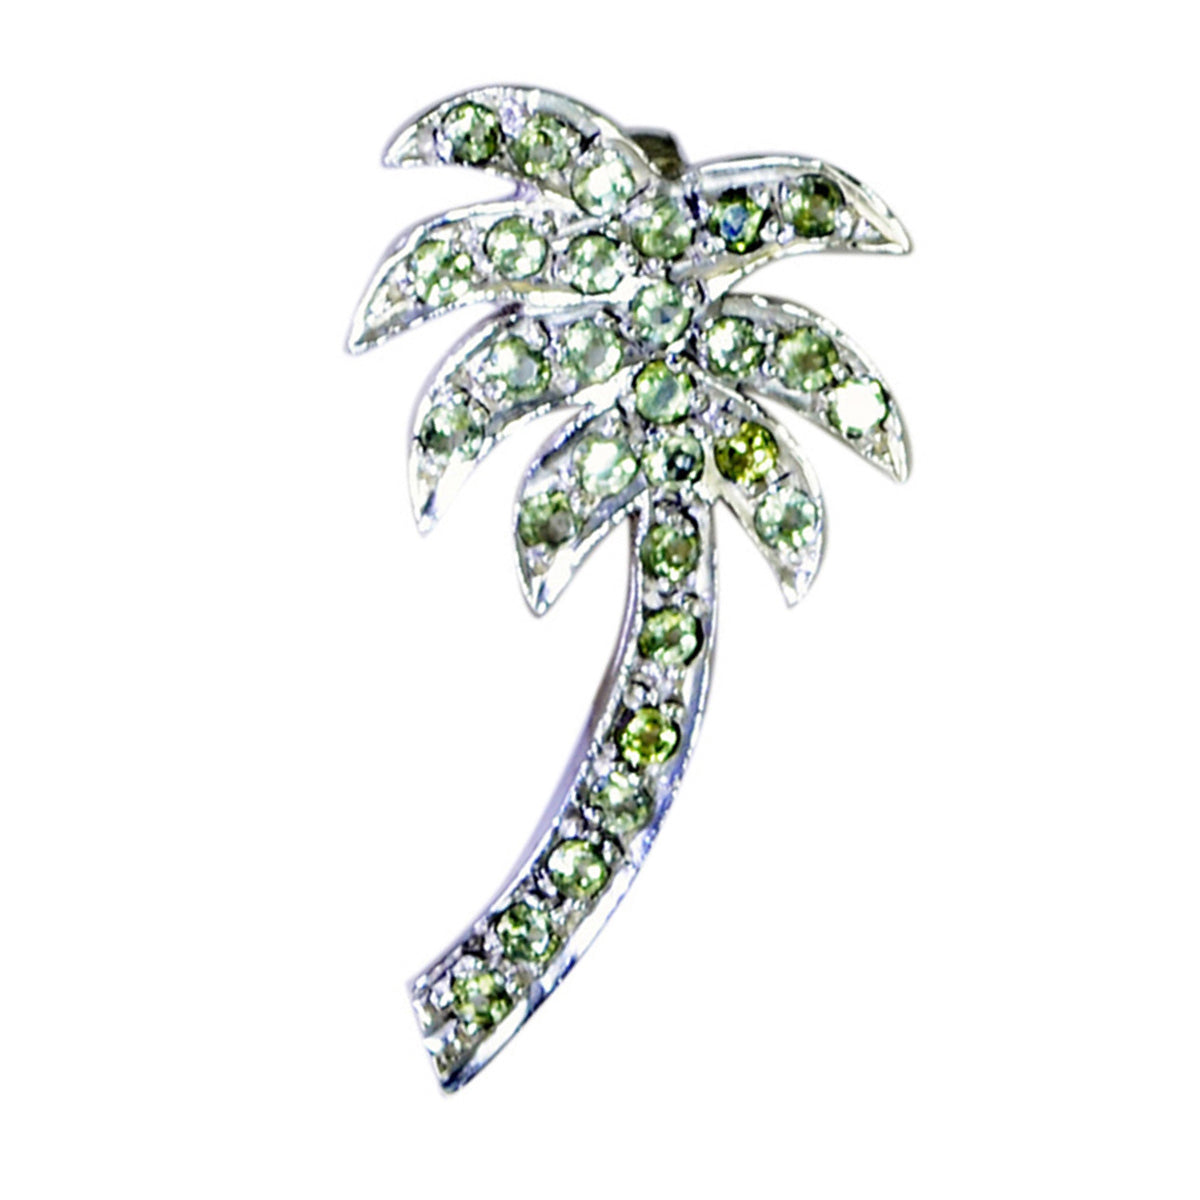 riyo tilltalande ädelstenar runda facetterad grön peridot silverhänge present för förlovning